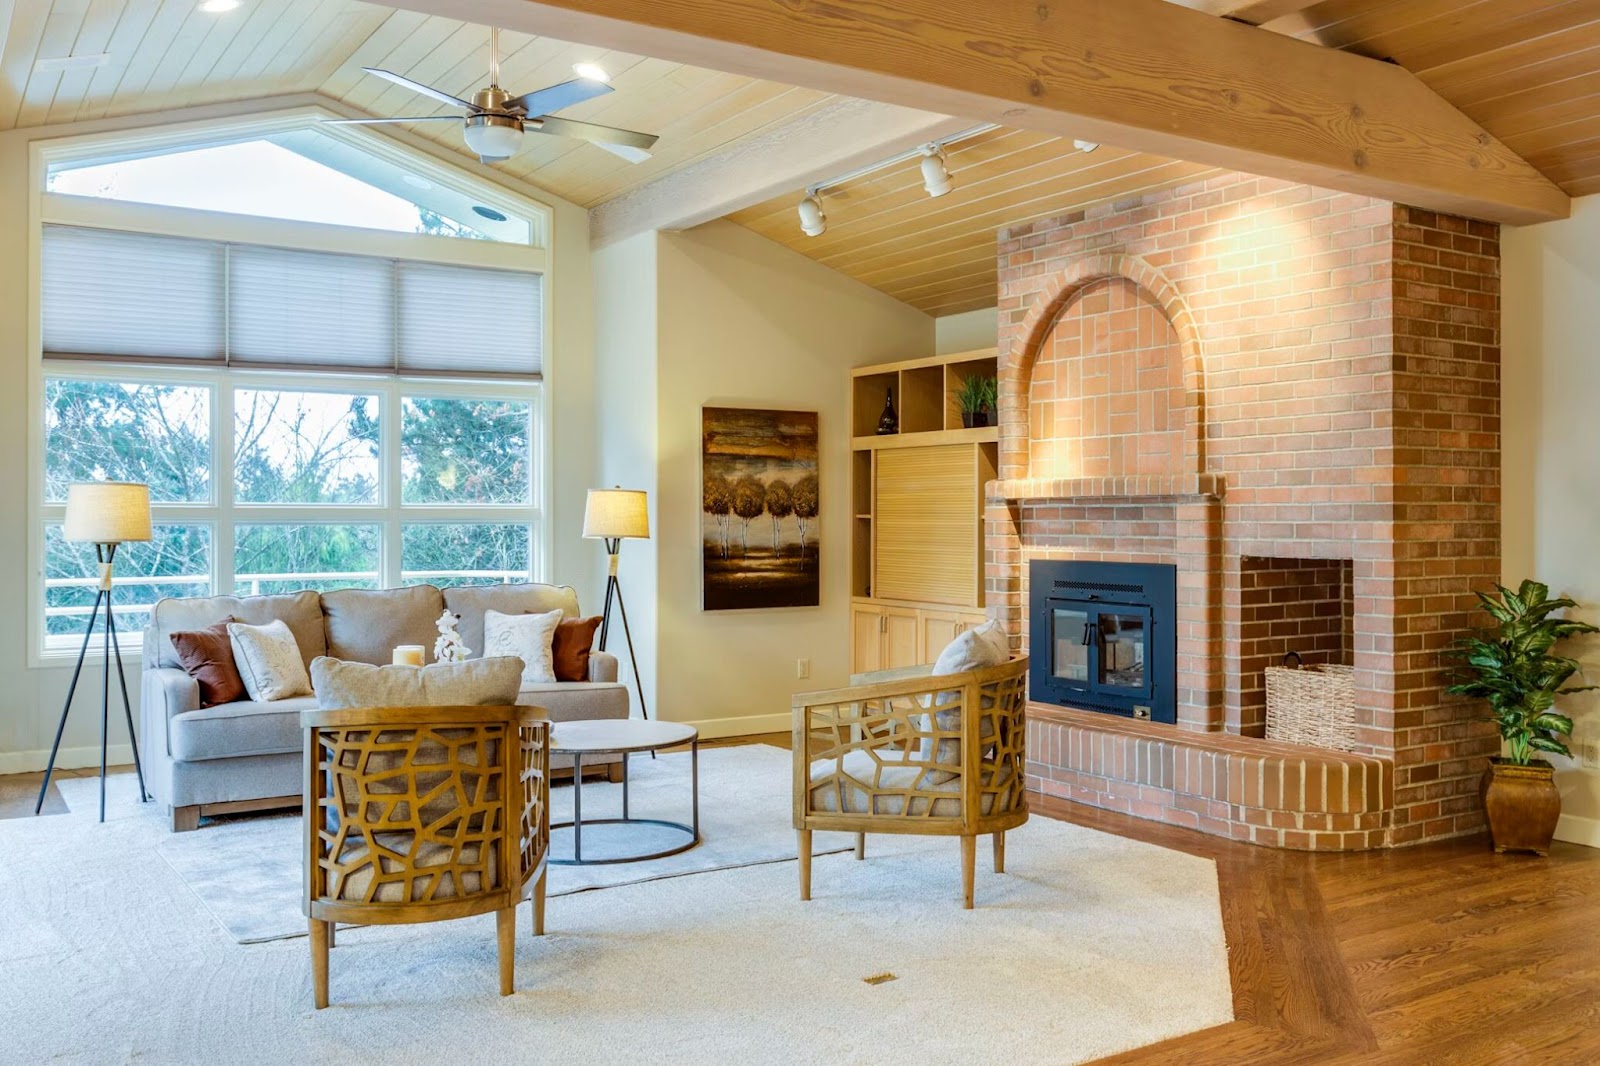 An image of desert living room interior design